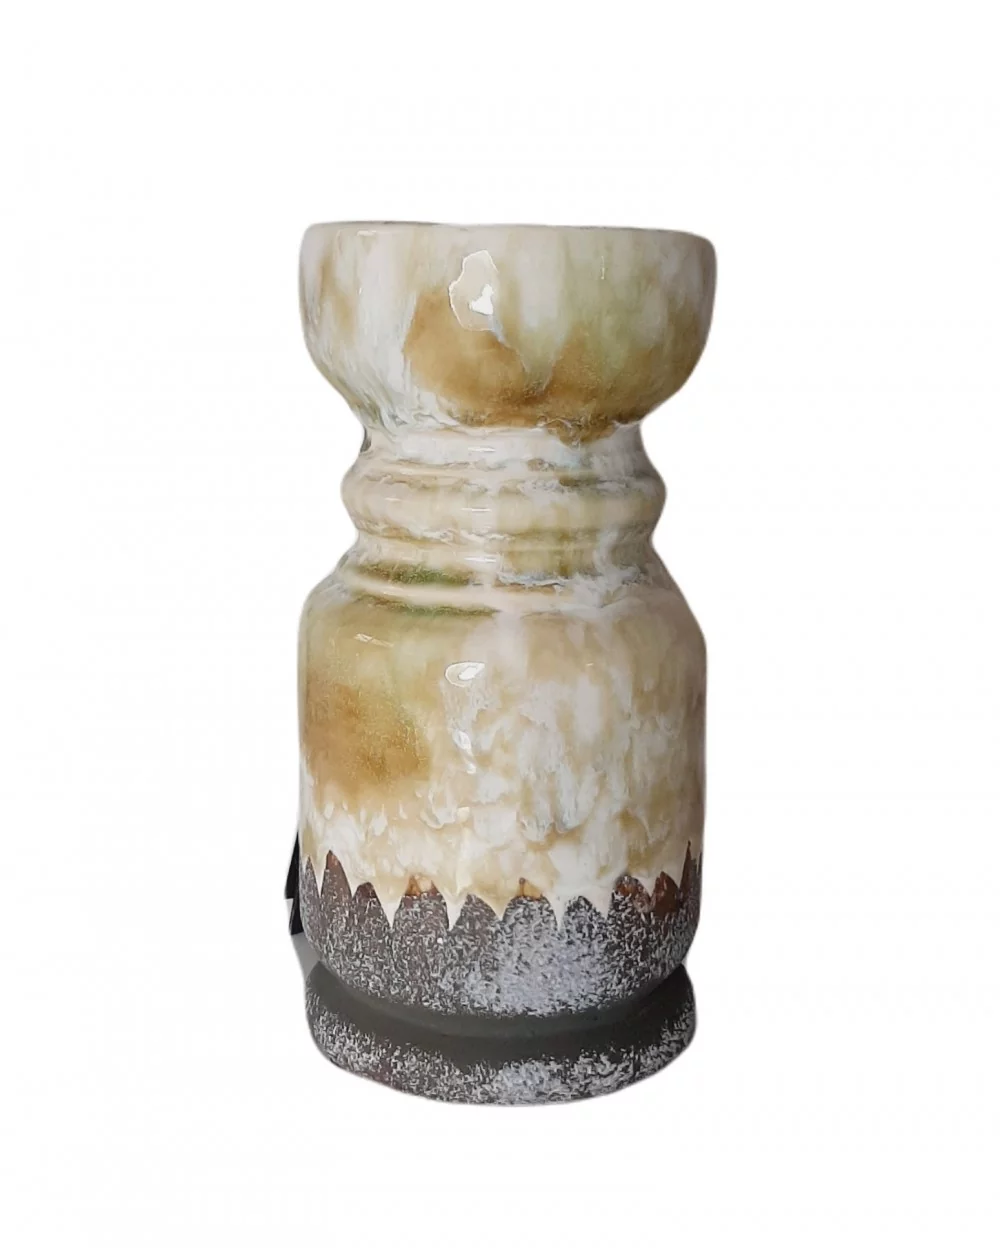 Keramický stojan na sviečku YELLOW, 21 cm (L)